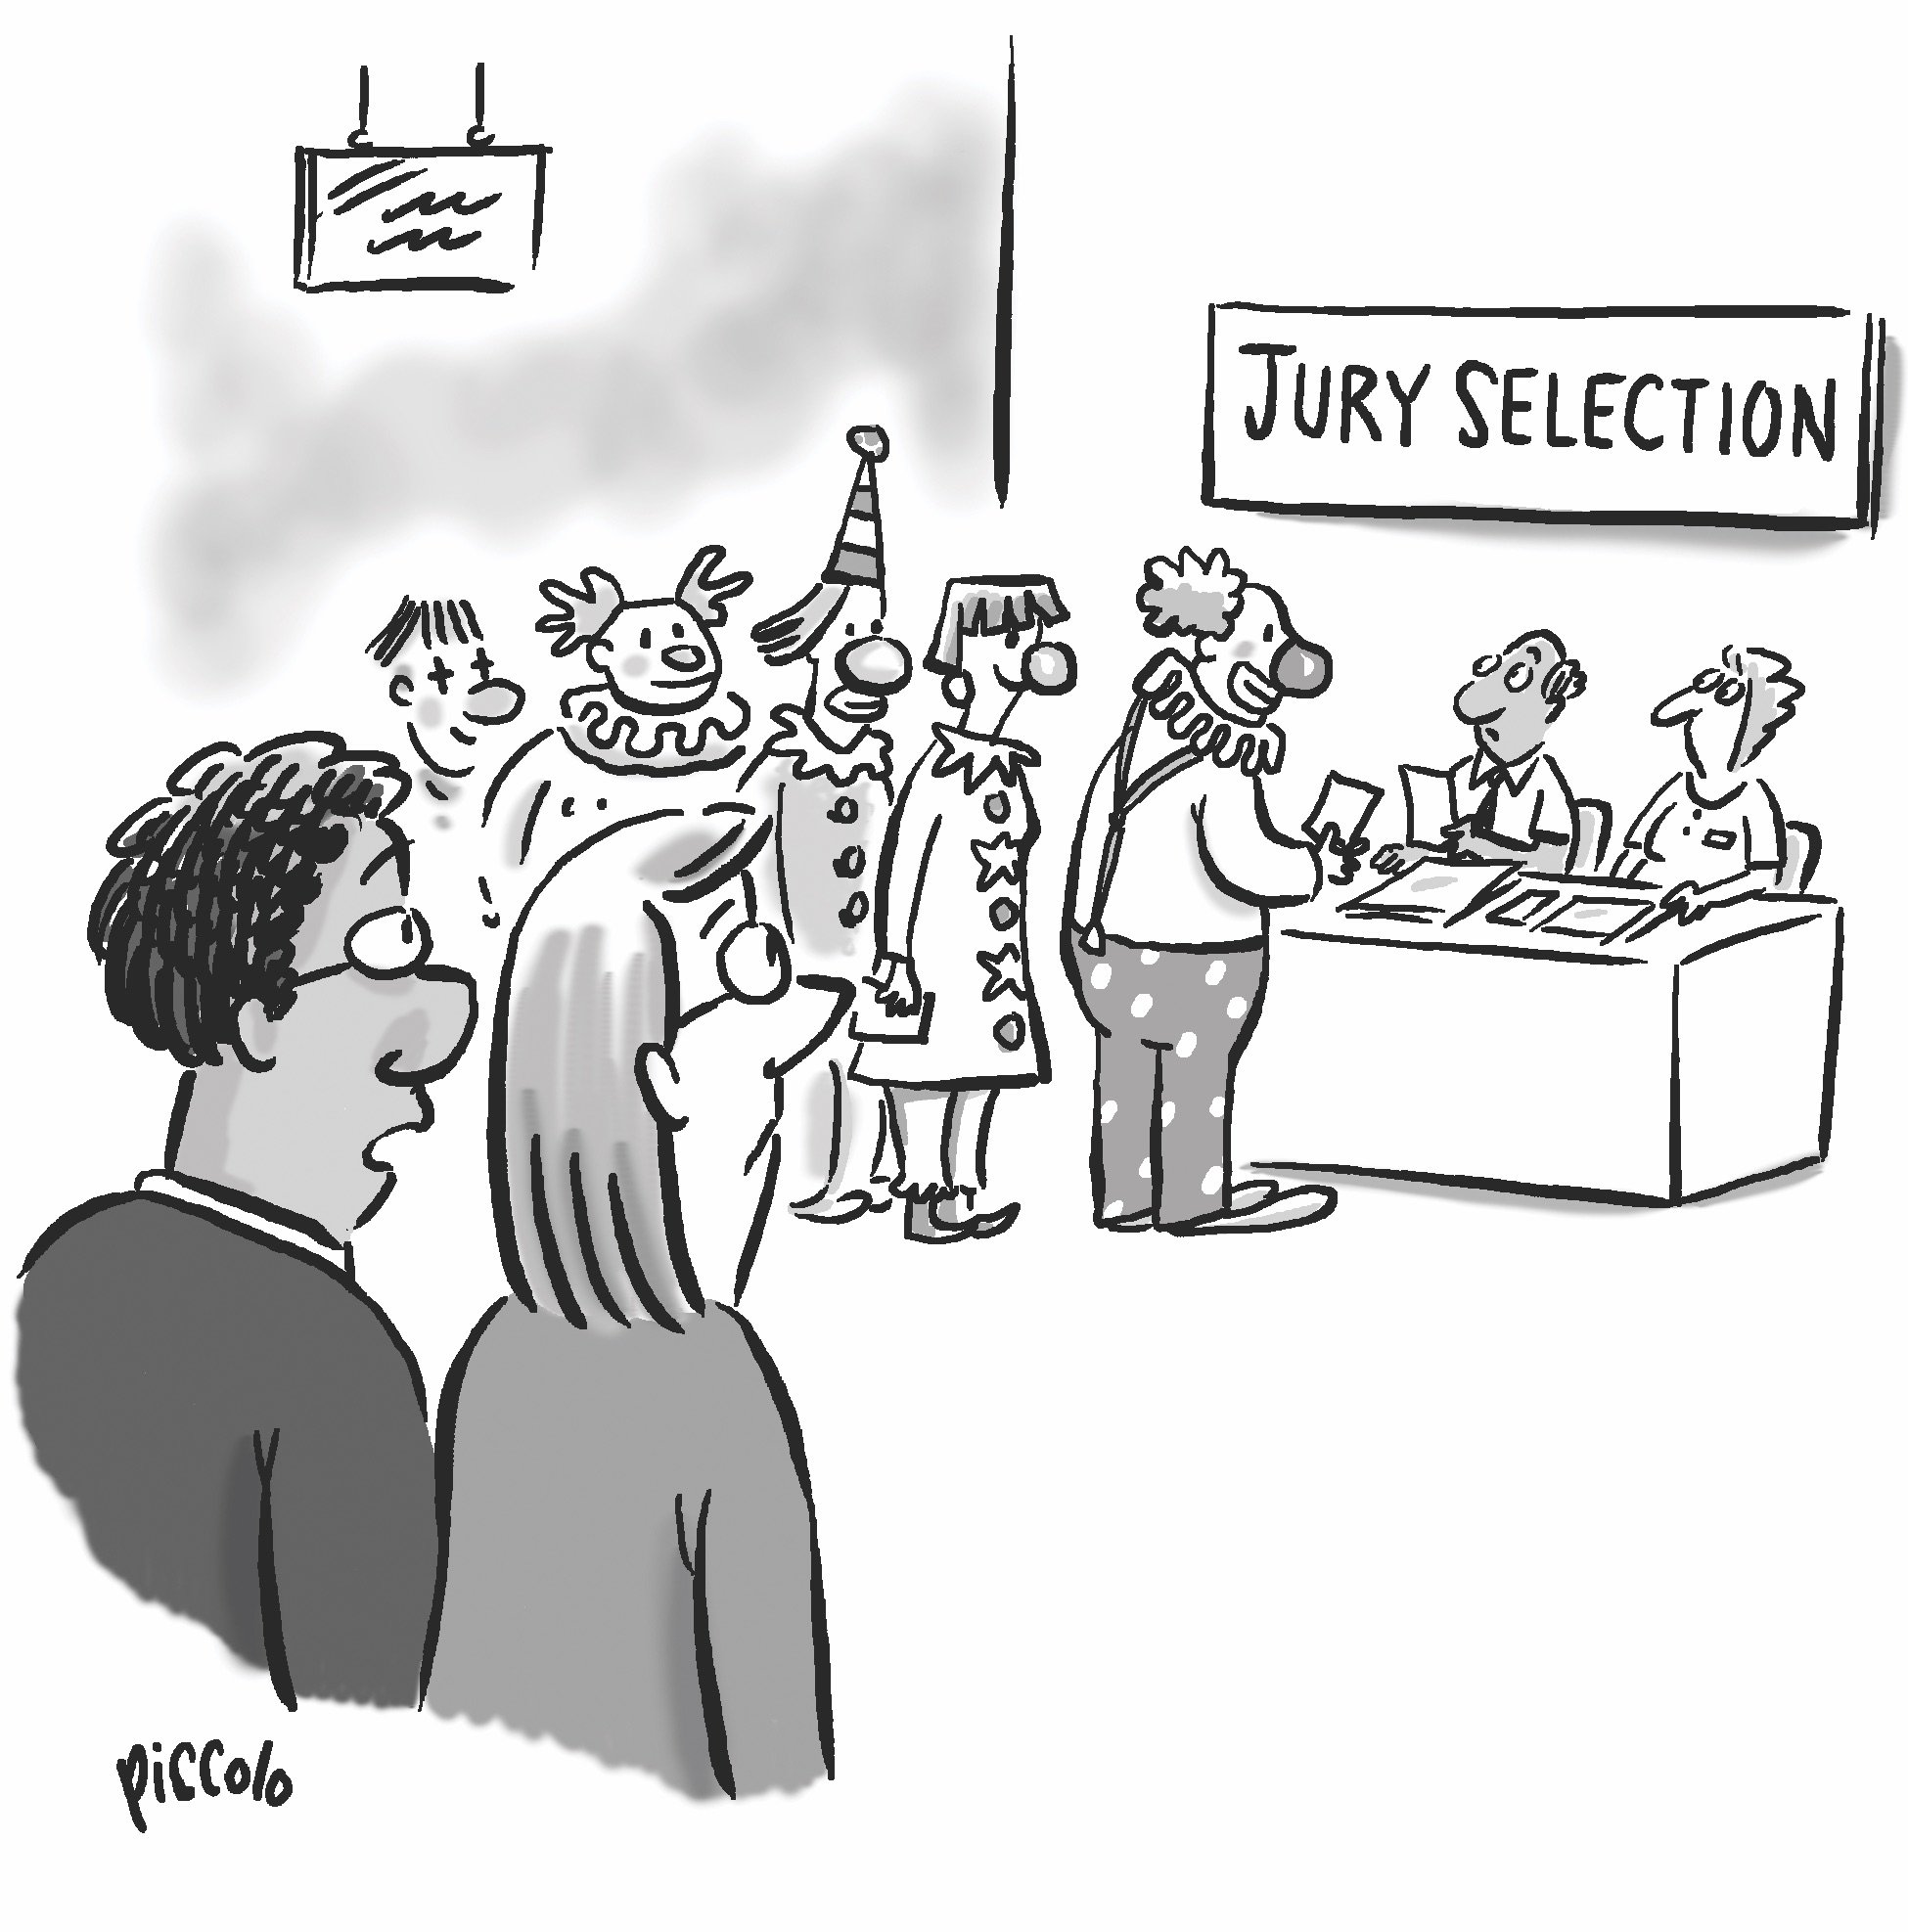 jury duty funny